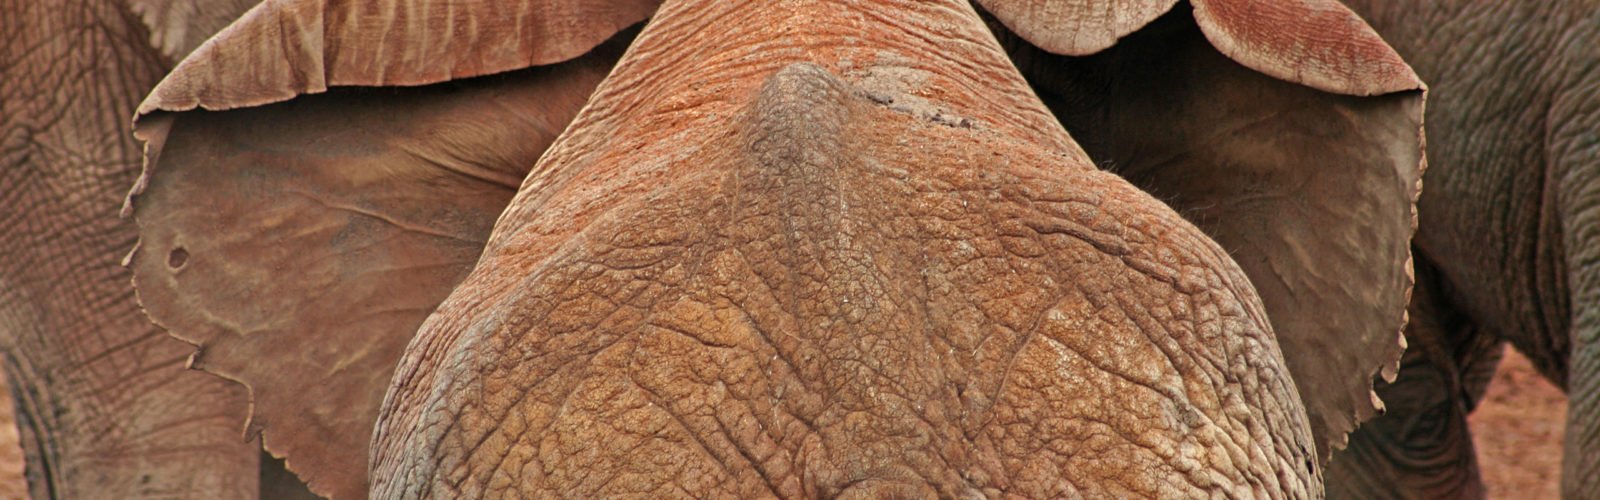 laikipia-elephant.